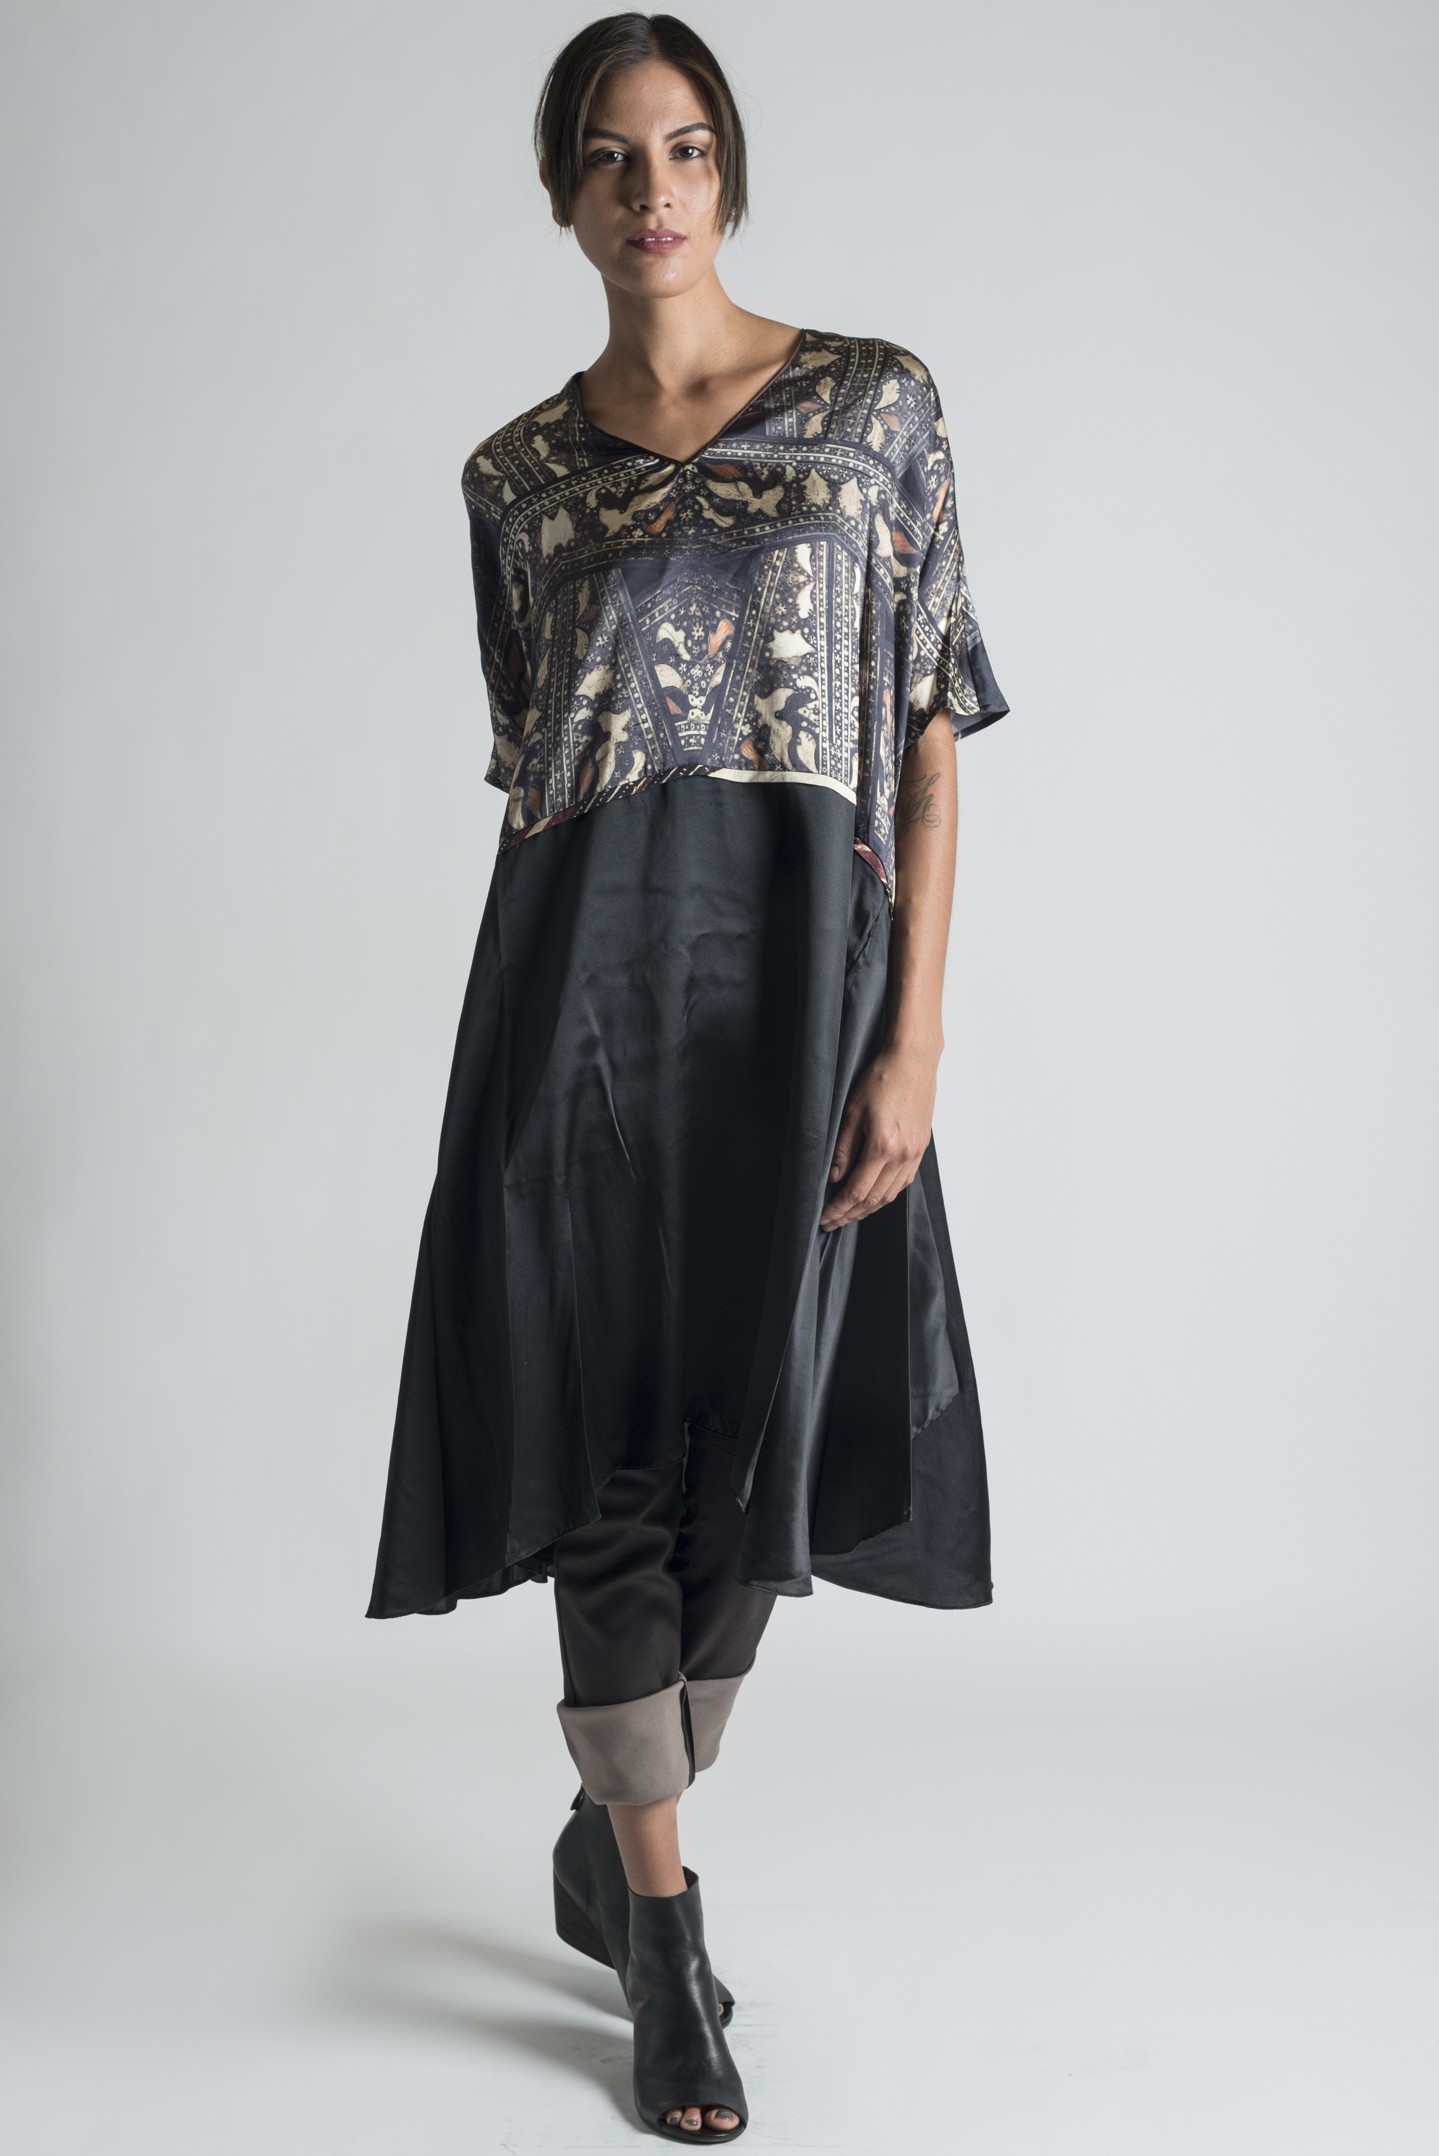 Gary Graham Zanzibar Byzantine Print Silk Tunic Dress in Multi | Santa ...